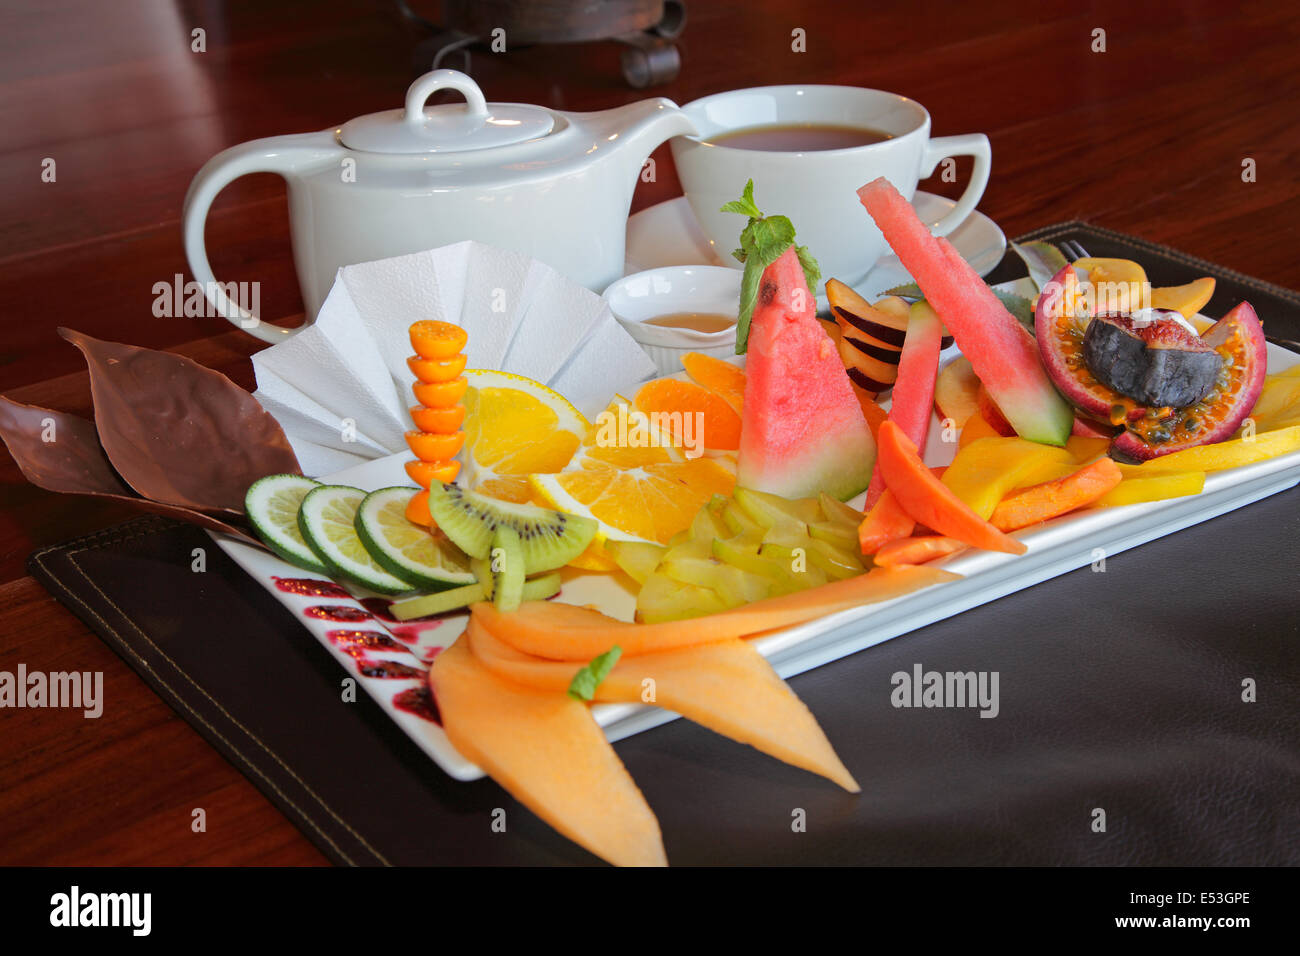 Plato de desayuno de fruta fresca y una olla de té Foto de stock